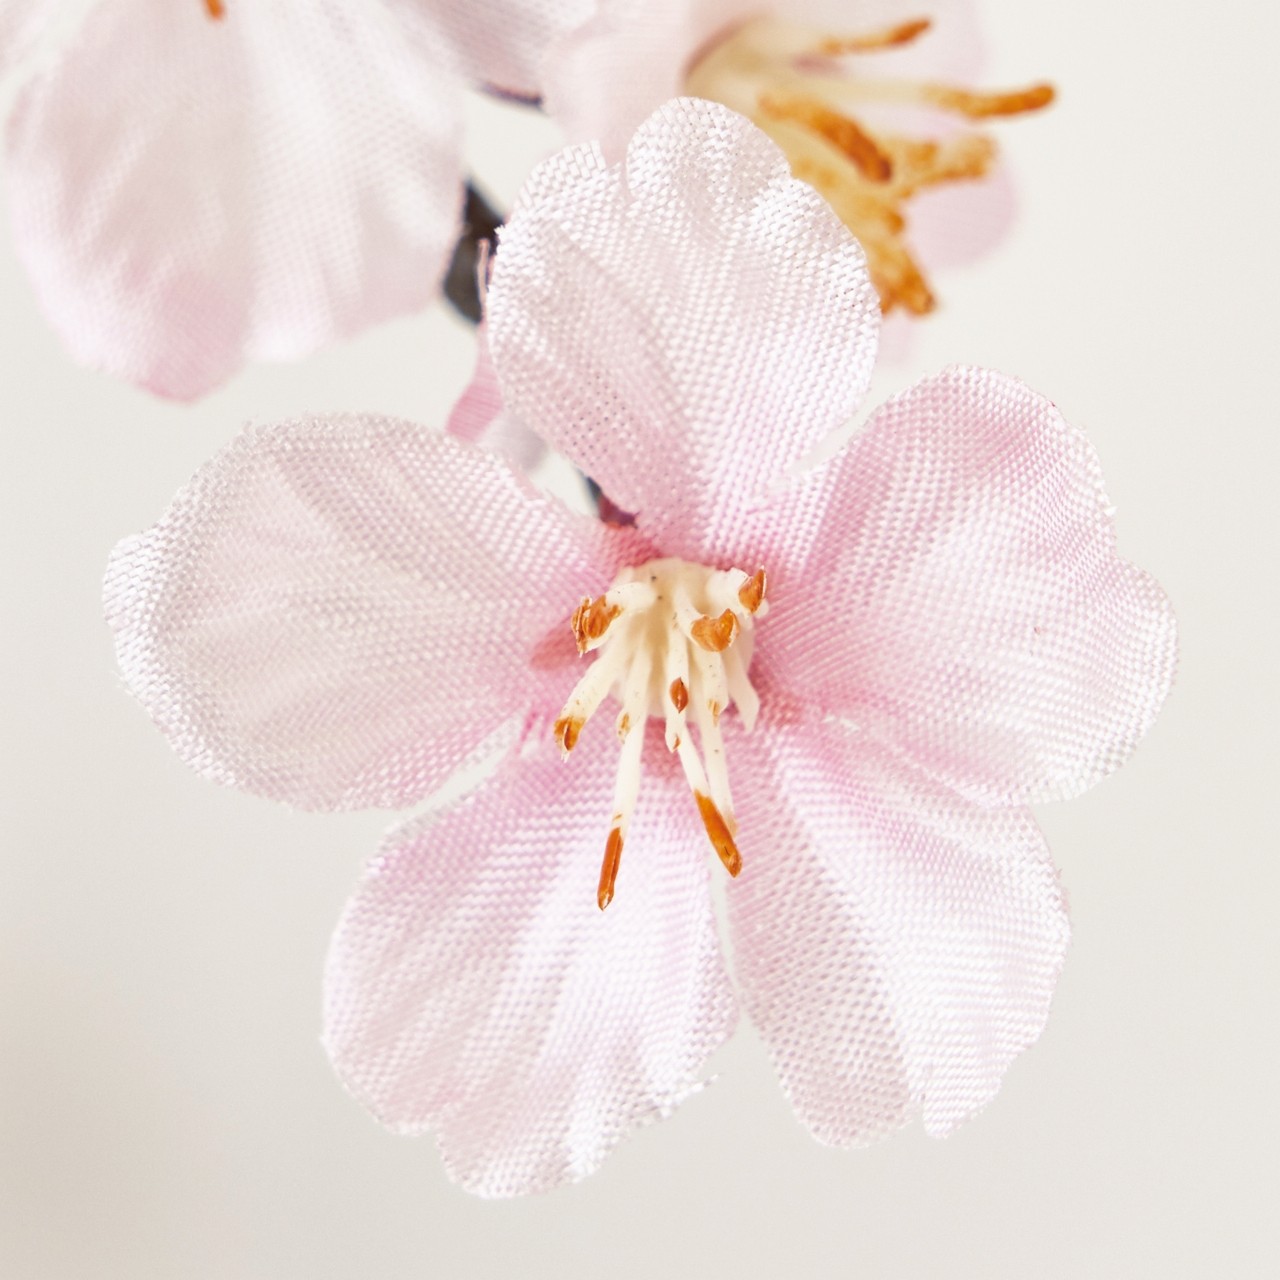 マイフラ 通販 Magiq 薄紅の桜 ガーランド ピンク アーティフィシャルフラワー 造花 Fm さくら 花径 約2 4 長さ 約115cm ピンク Magiq アーティフィシャルフラワー 造花 全国にmagiq 花器 花資材などをお届けします